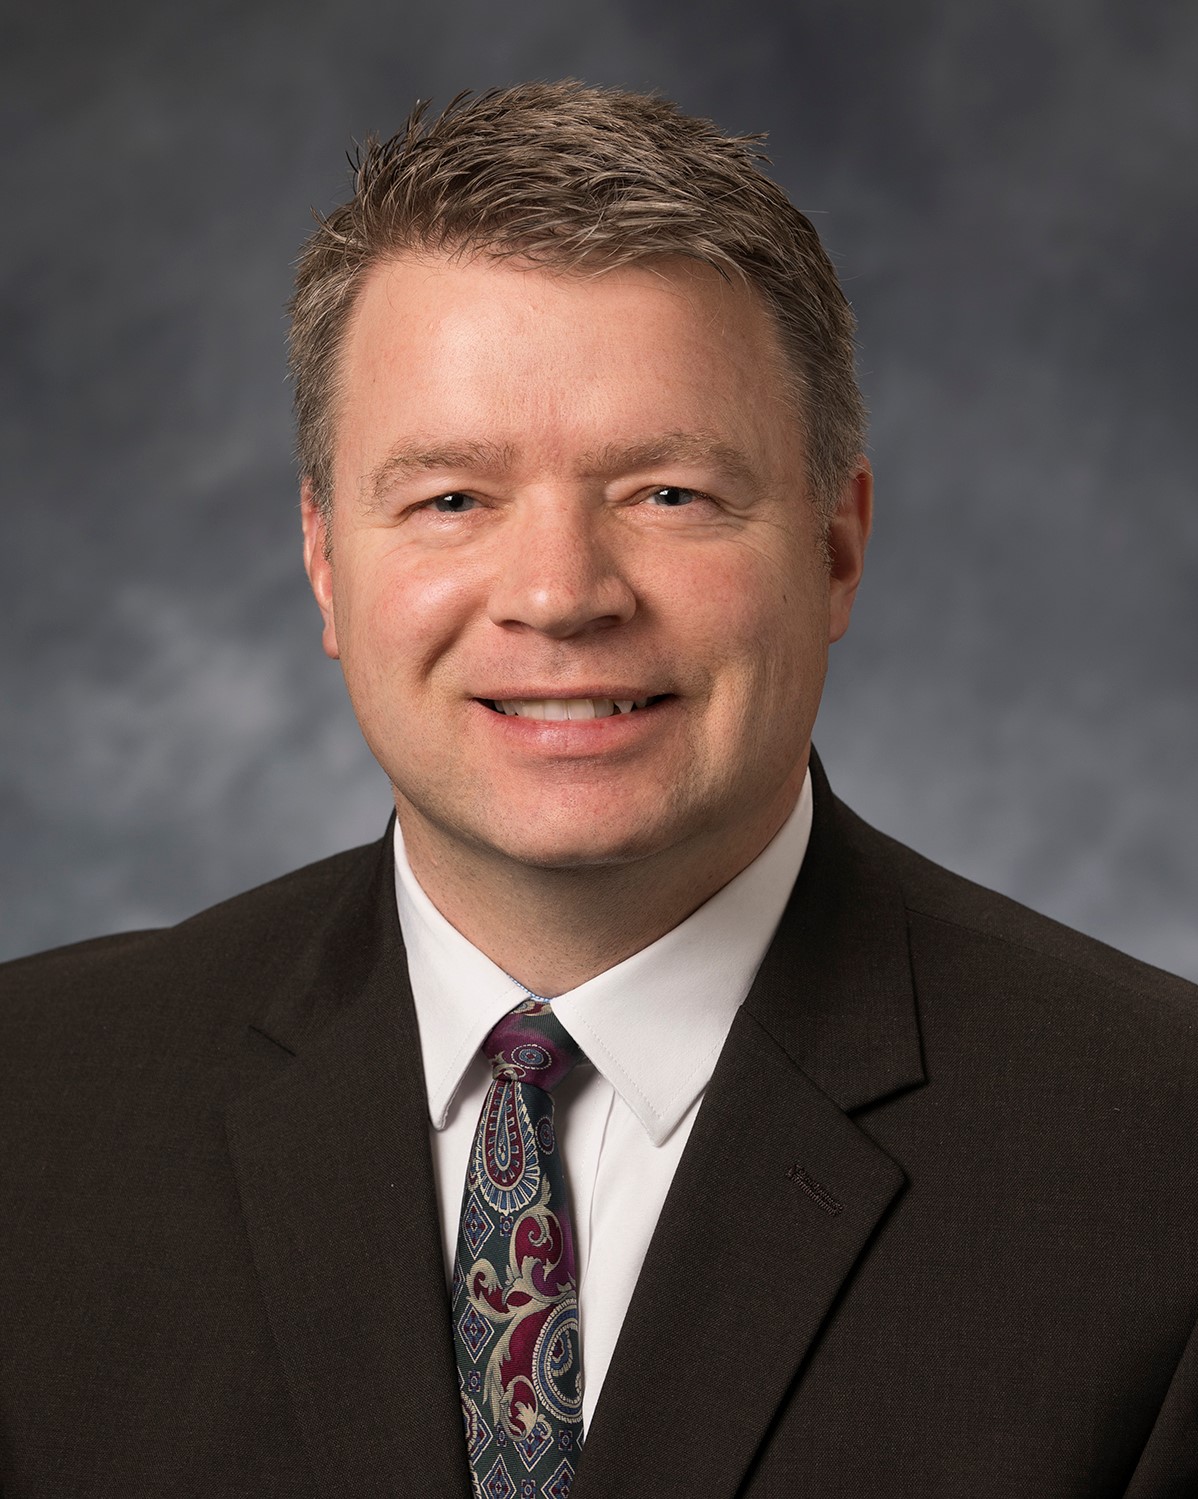 James R. Gottschald, Human Resources Director